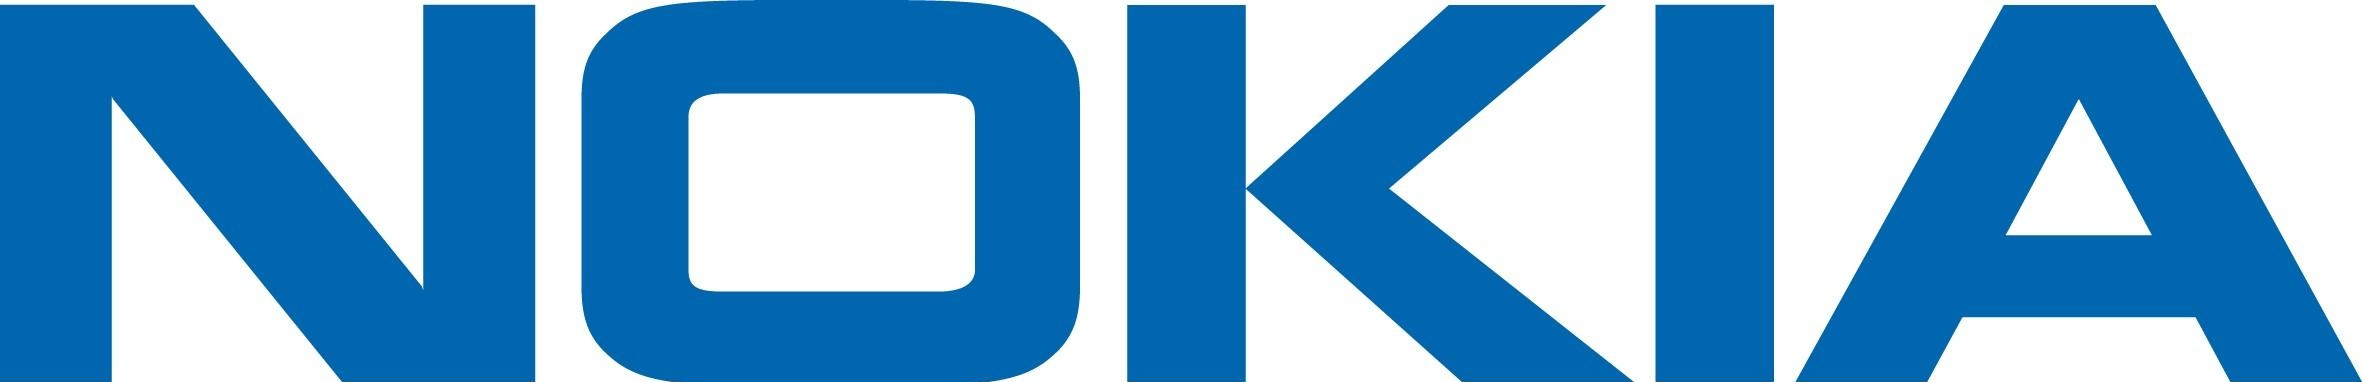 капитализация компании Nokia Corporation 